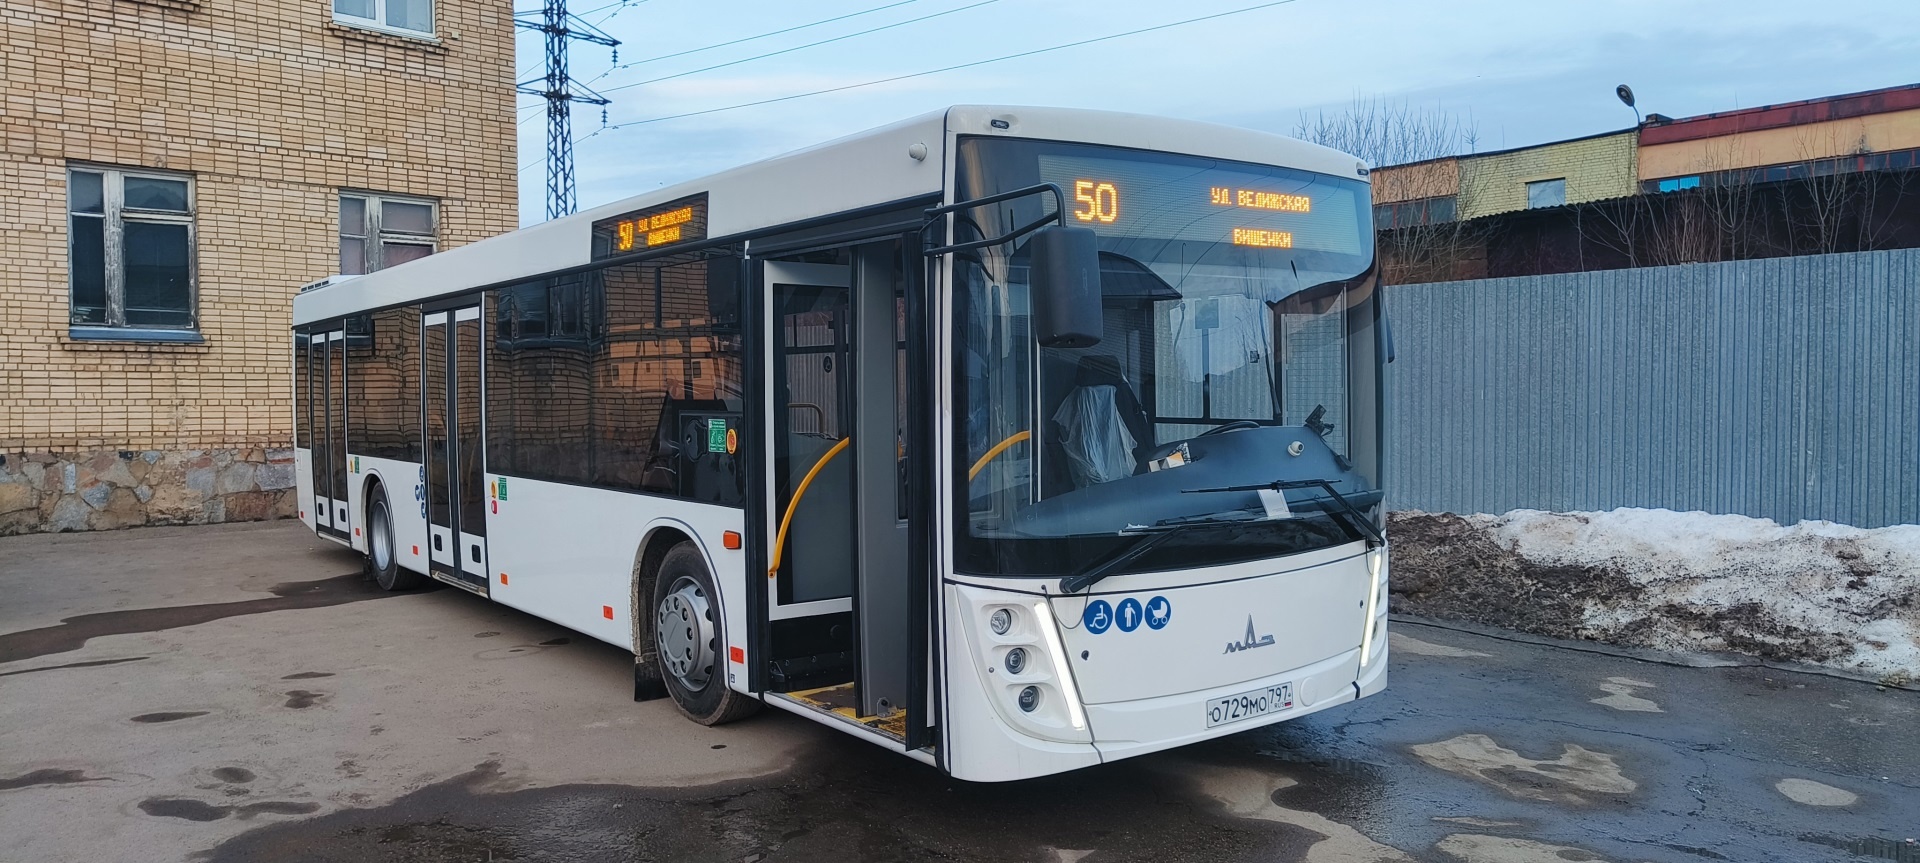 В Смоленске на маршруте № 50 начнёт курсировать новый автобус большого класса